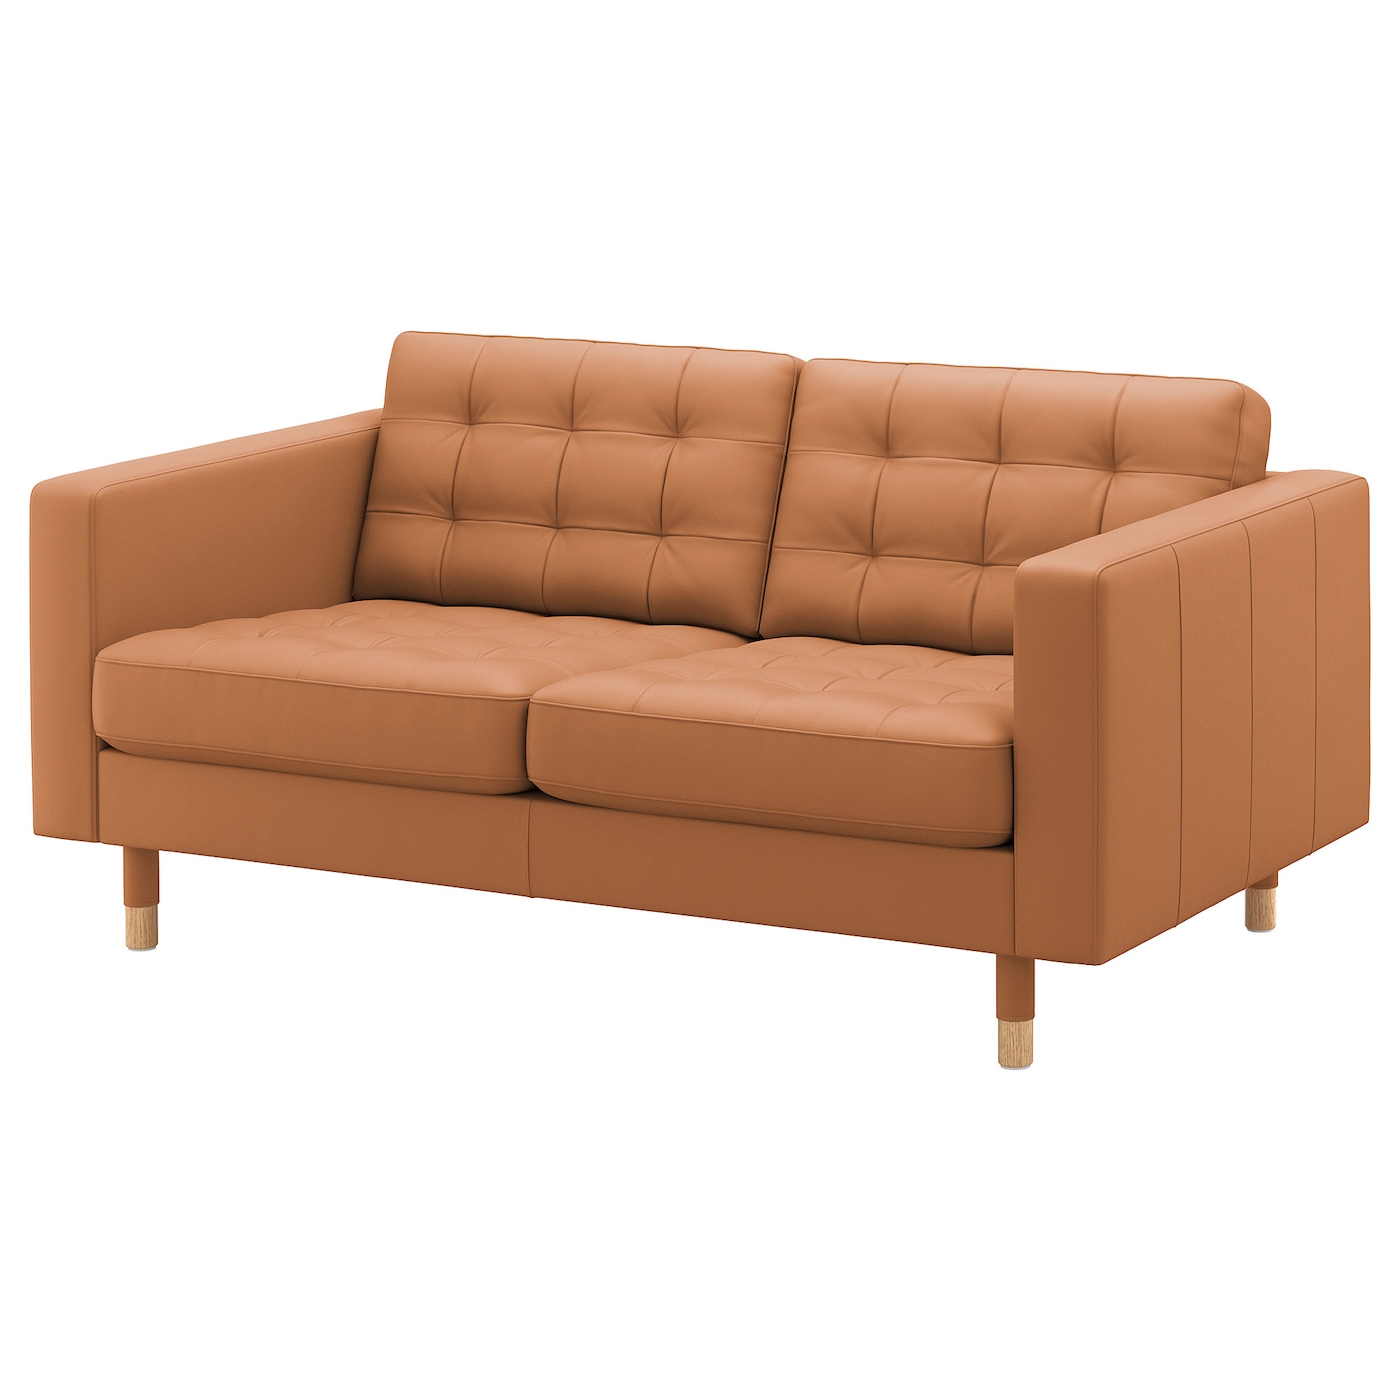 2-местный диван - IKEA LANDSKRONA, 164х89х78 см, оранжевый, кожа, ЛАНДСКРУНА ИКЕА